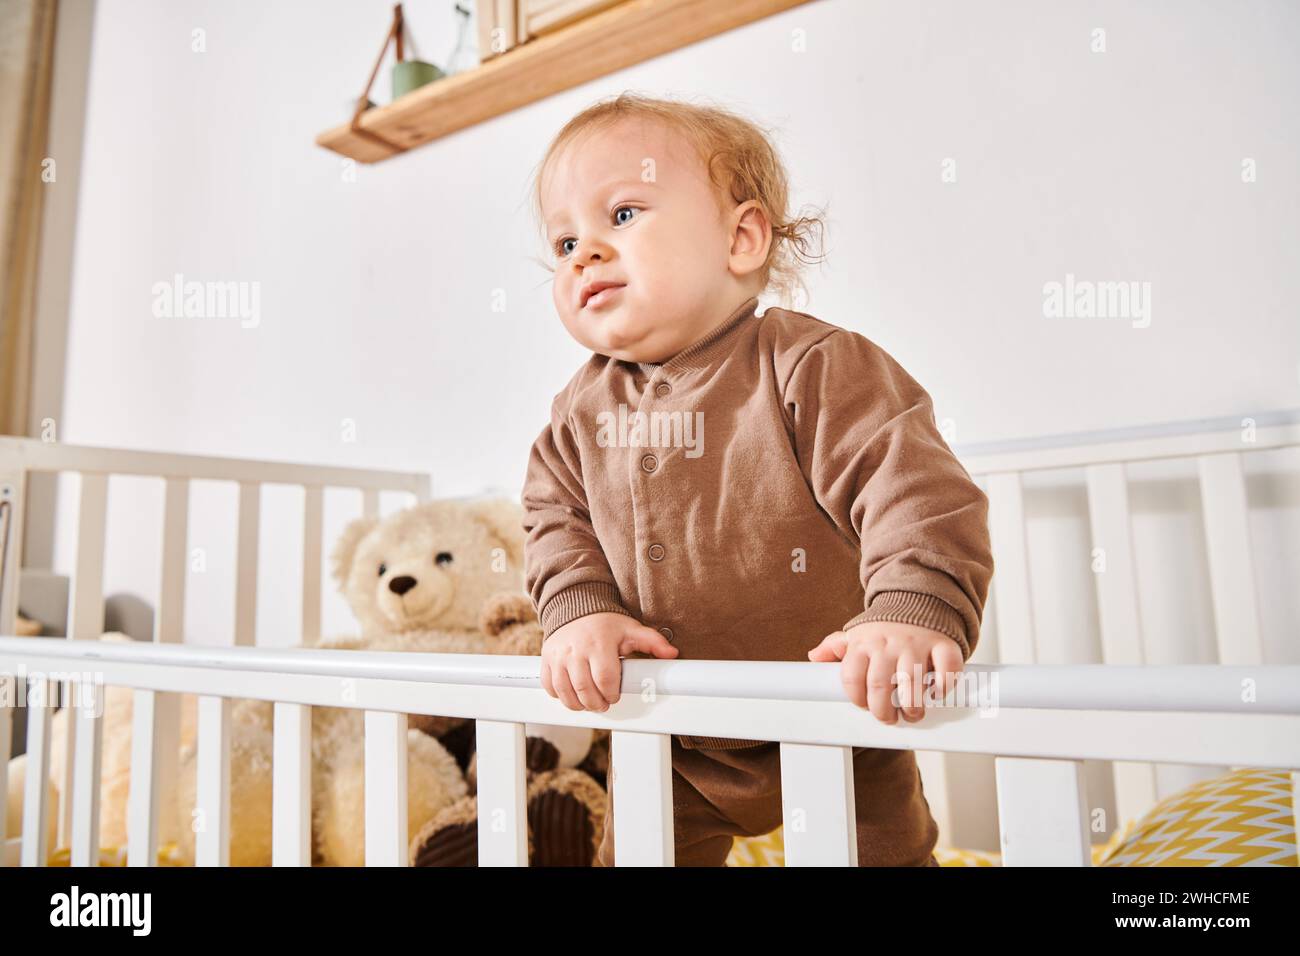 Glückselige Kindheit, süßes kleines Kind, das im Kinderbett mit weichen Spielzeugen im gemütlichen Kinderzimmer zu Hause steht Stockfoto